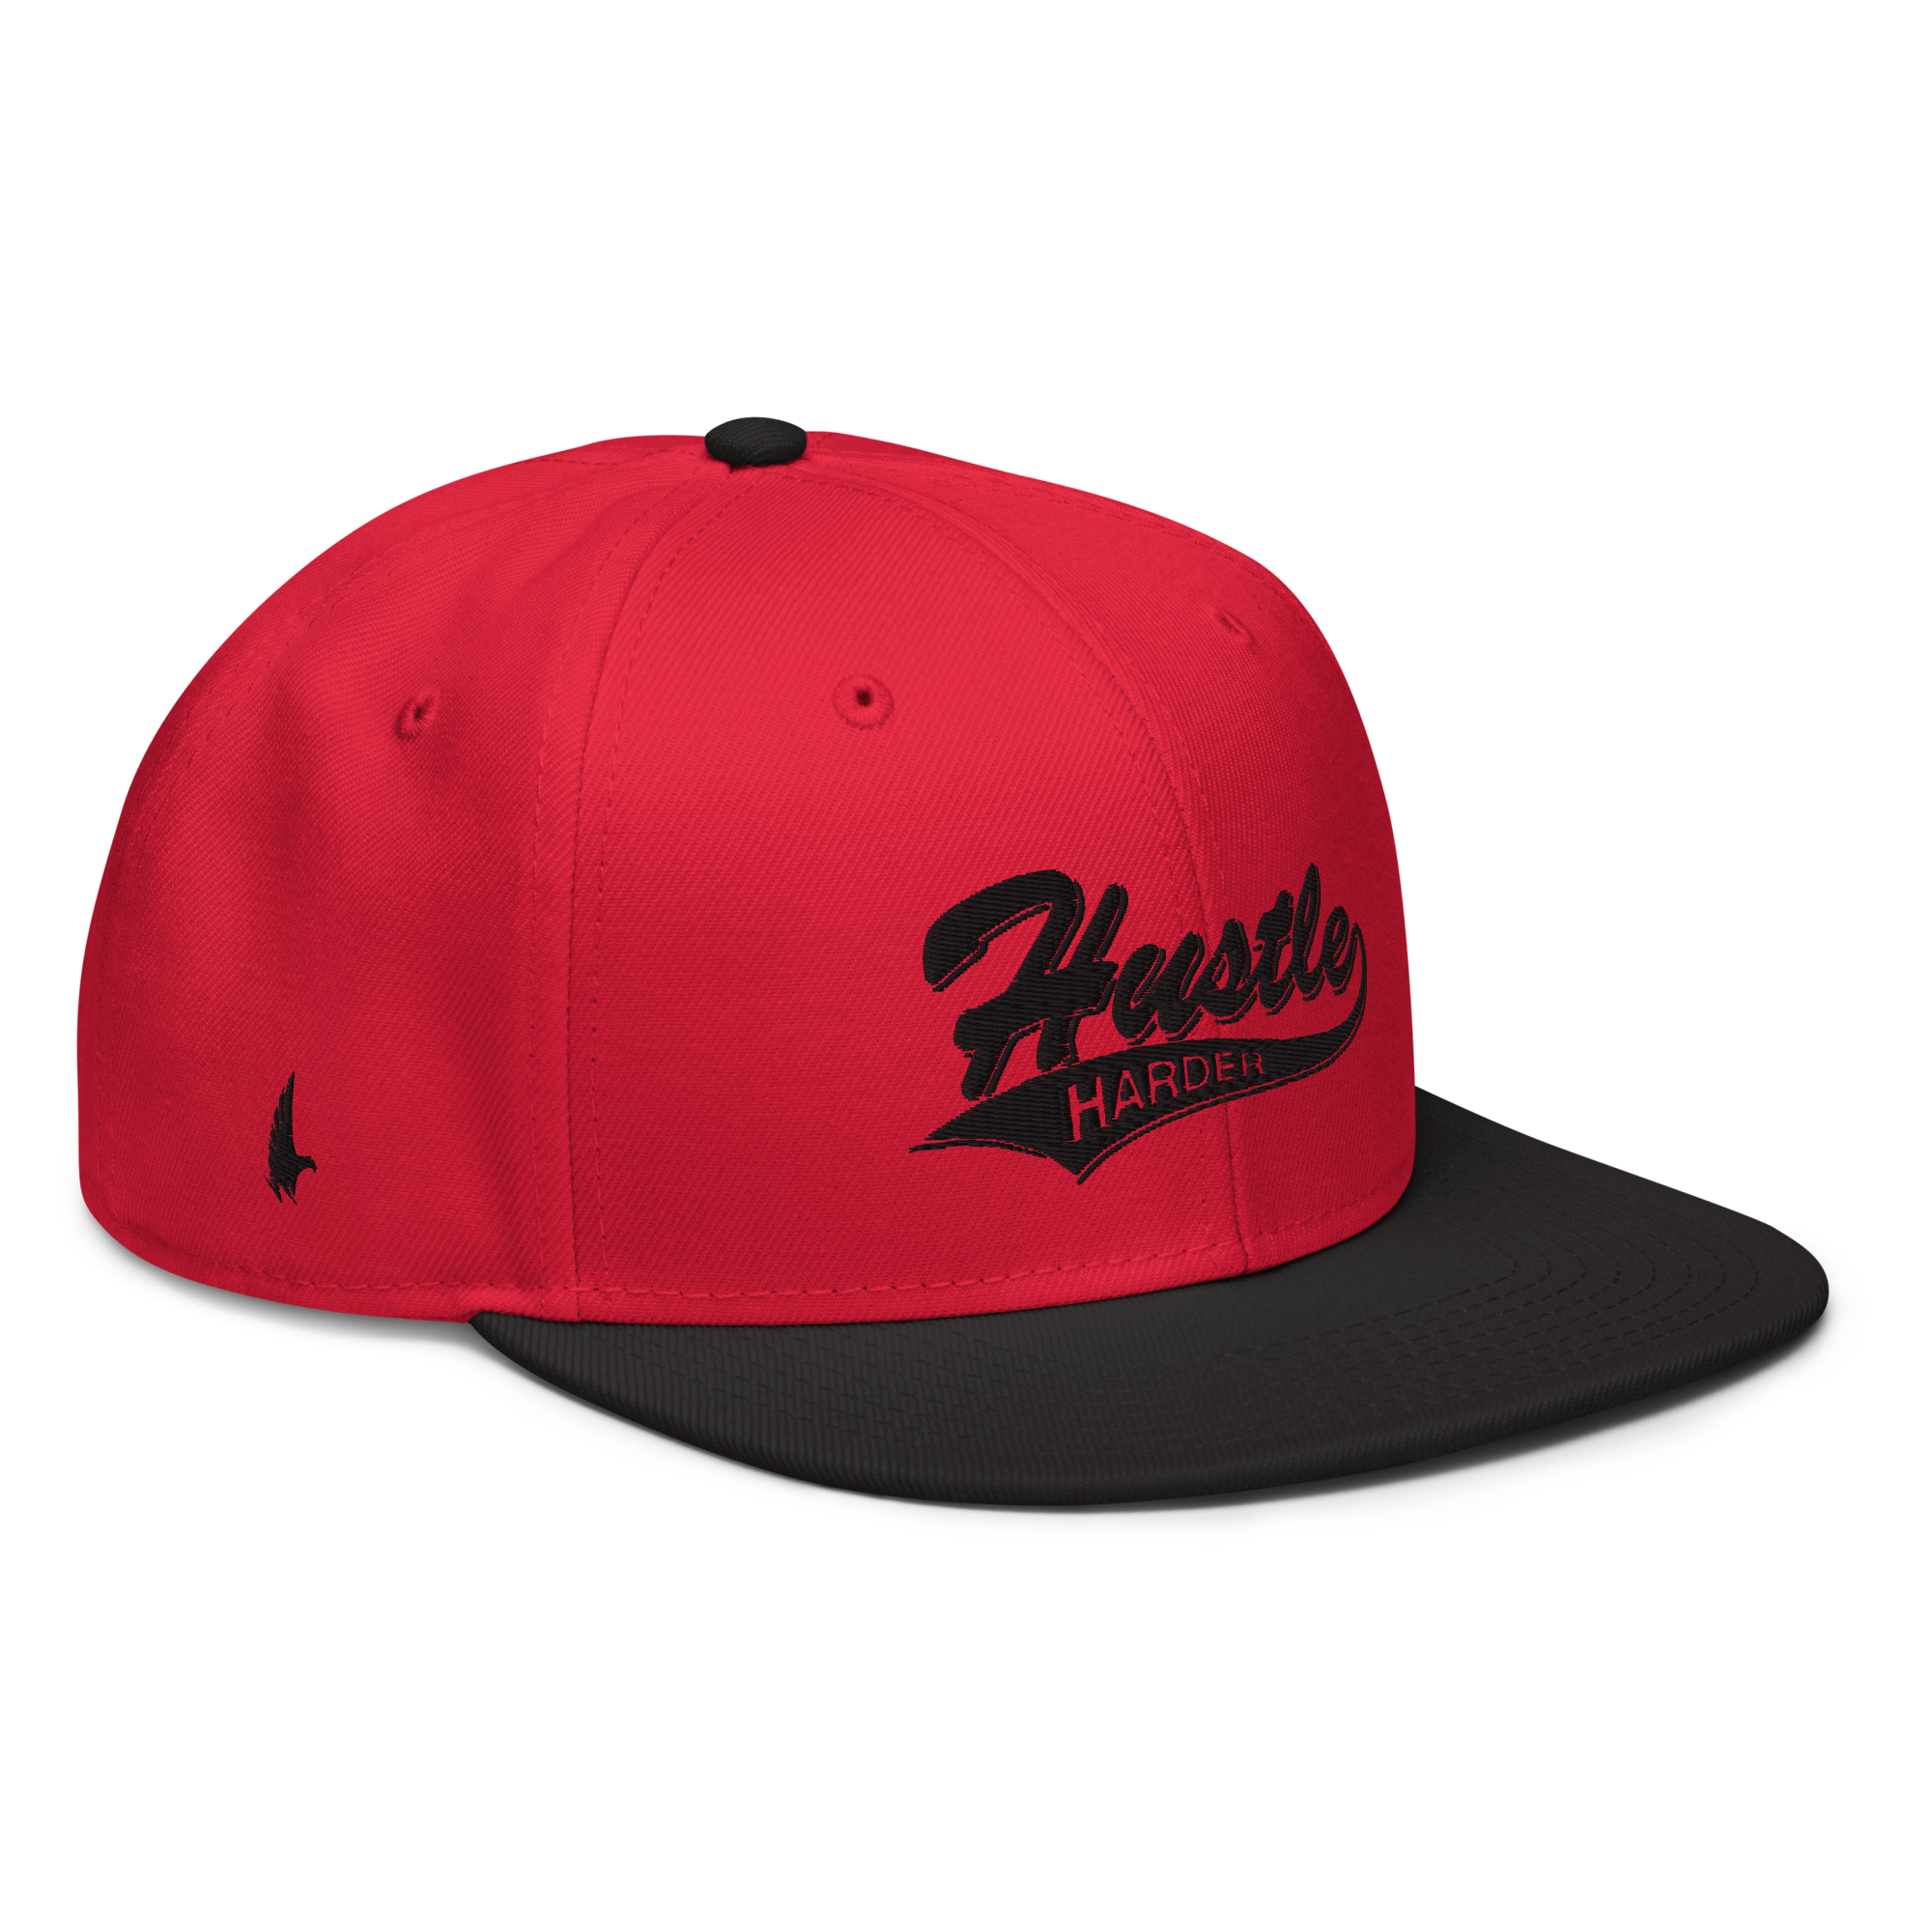 Hustle Harder Snapback Hat - Red / Black / Black OS - Loyalty Vibes